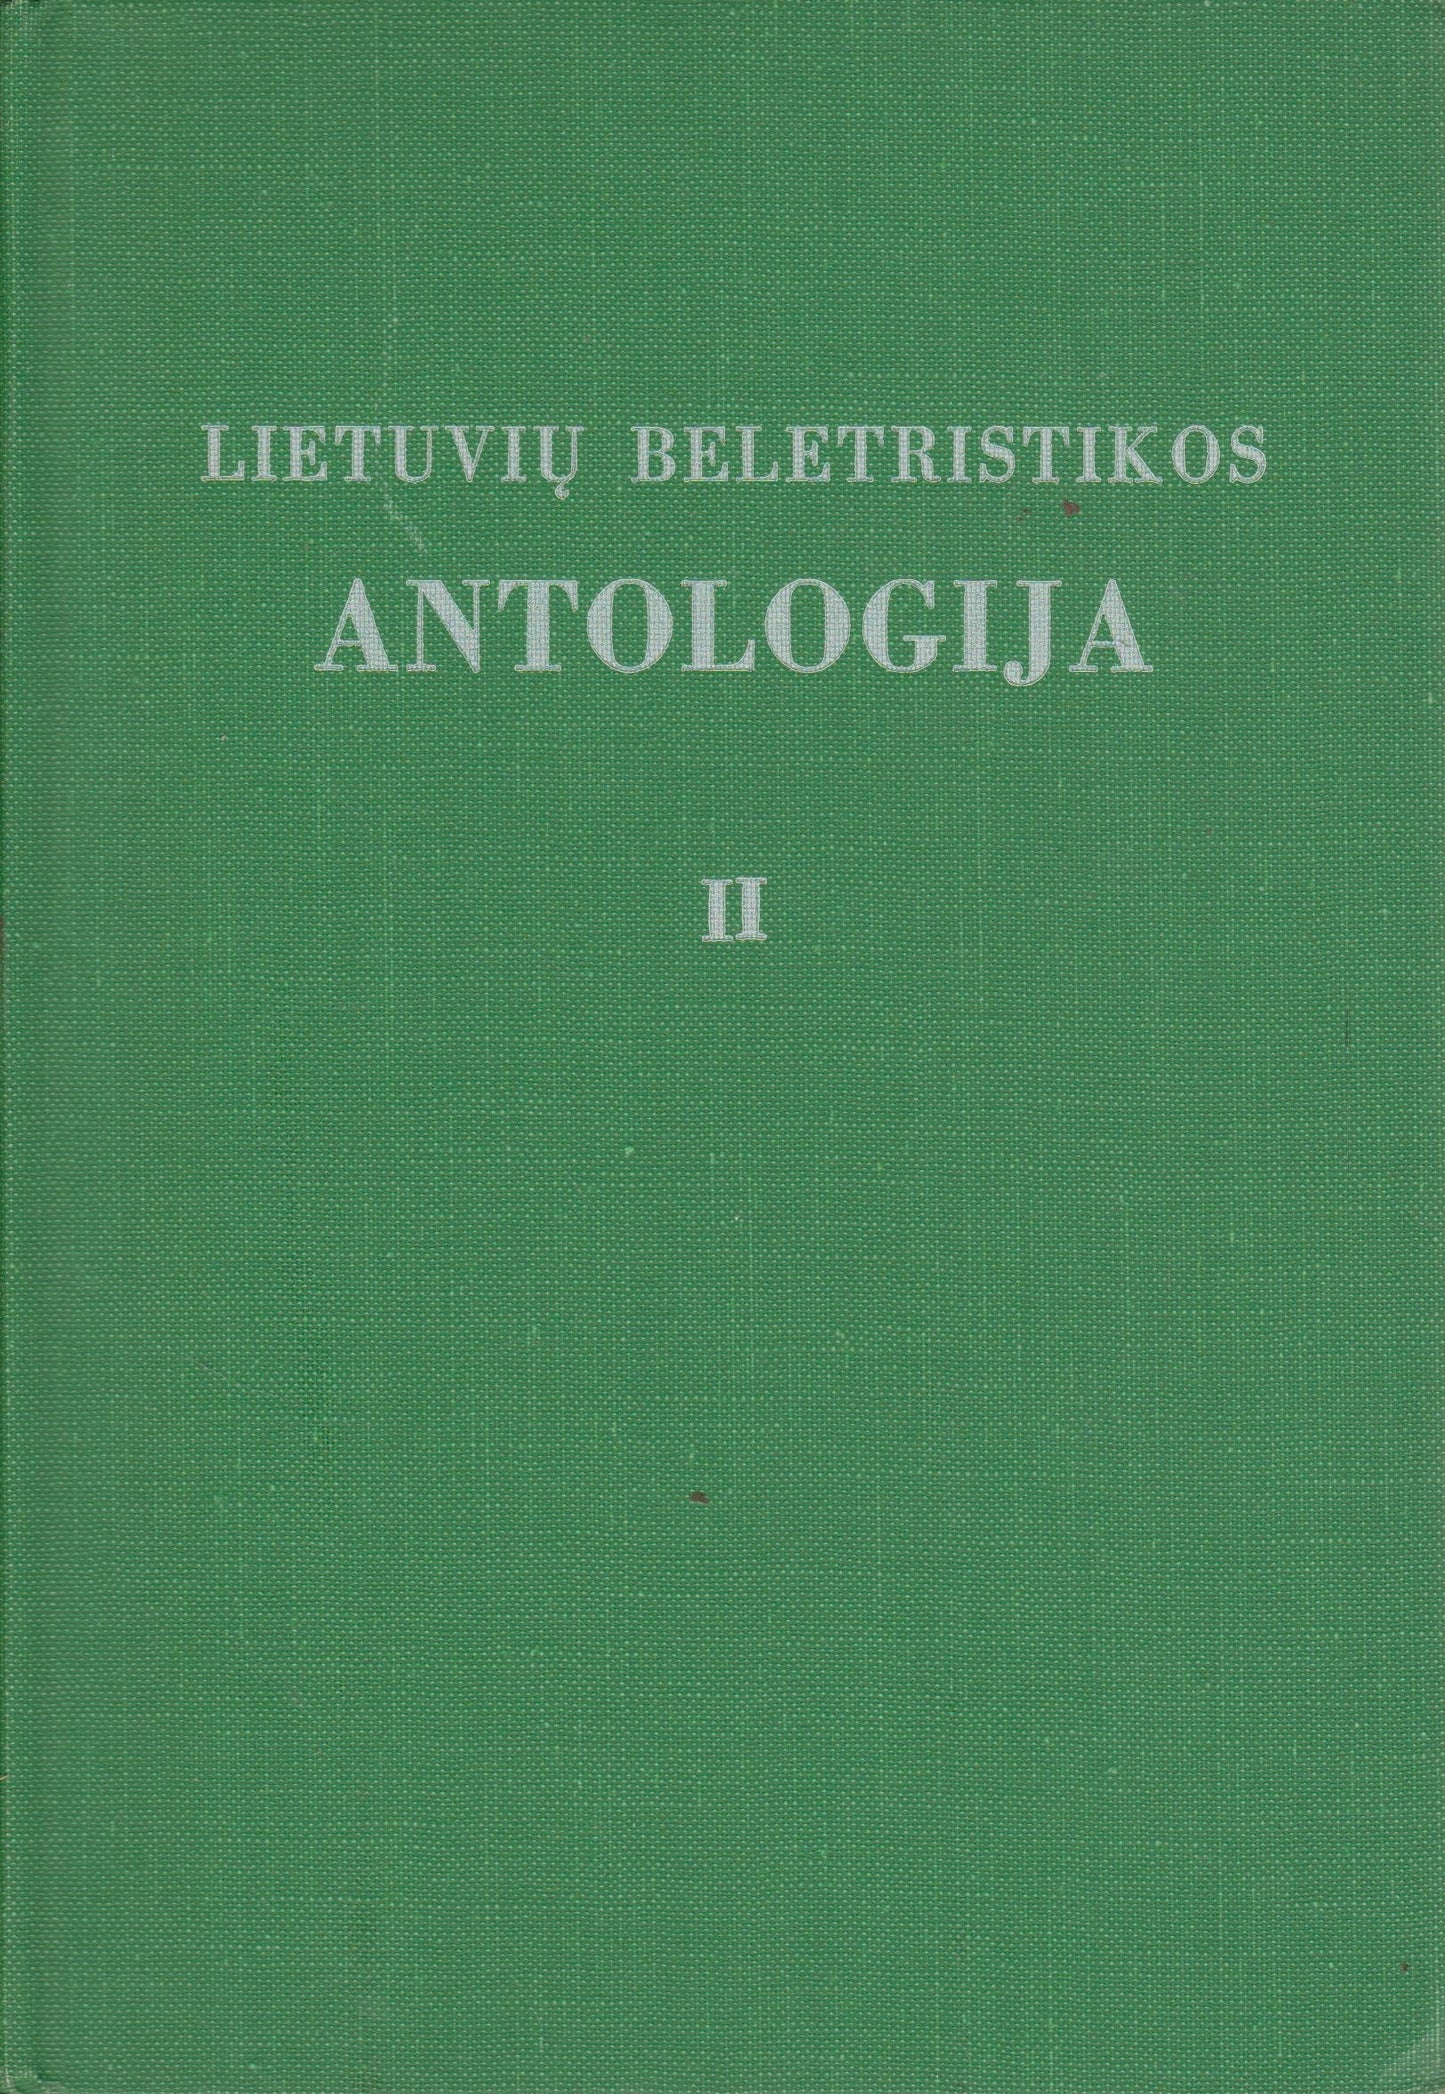 Lietuvių beletristikos antologija (2 dalys), 1957, Chicago